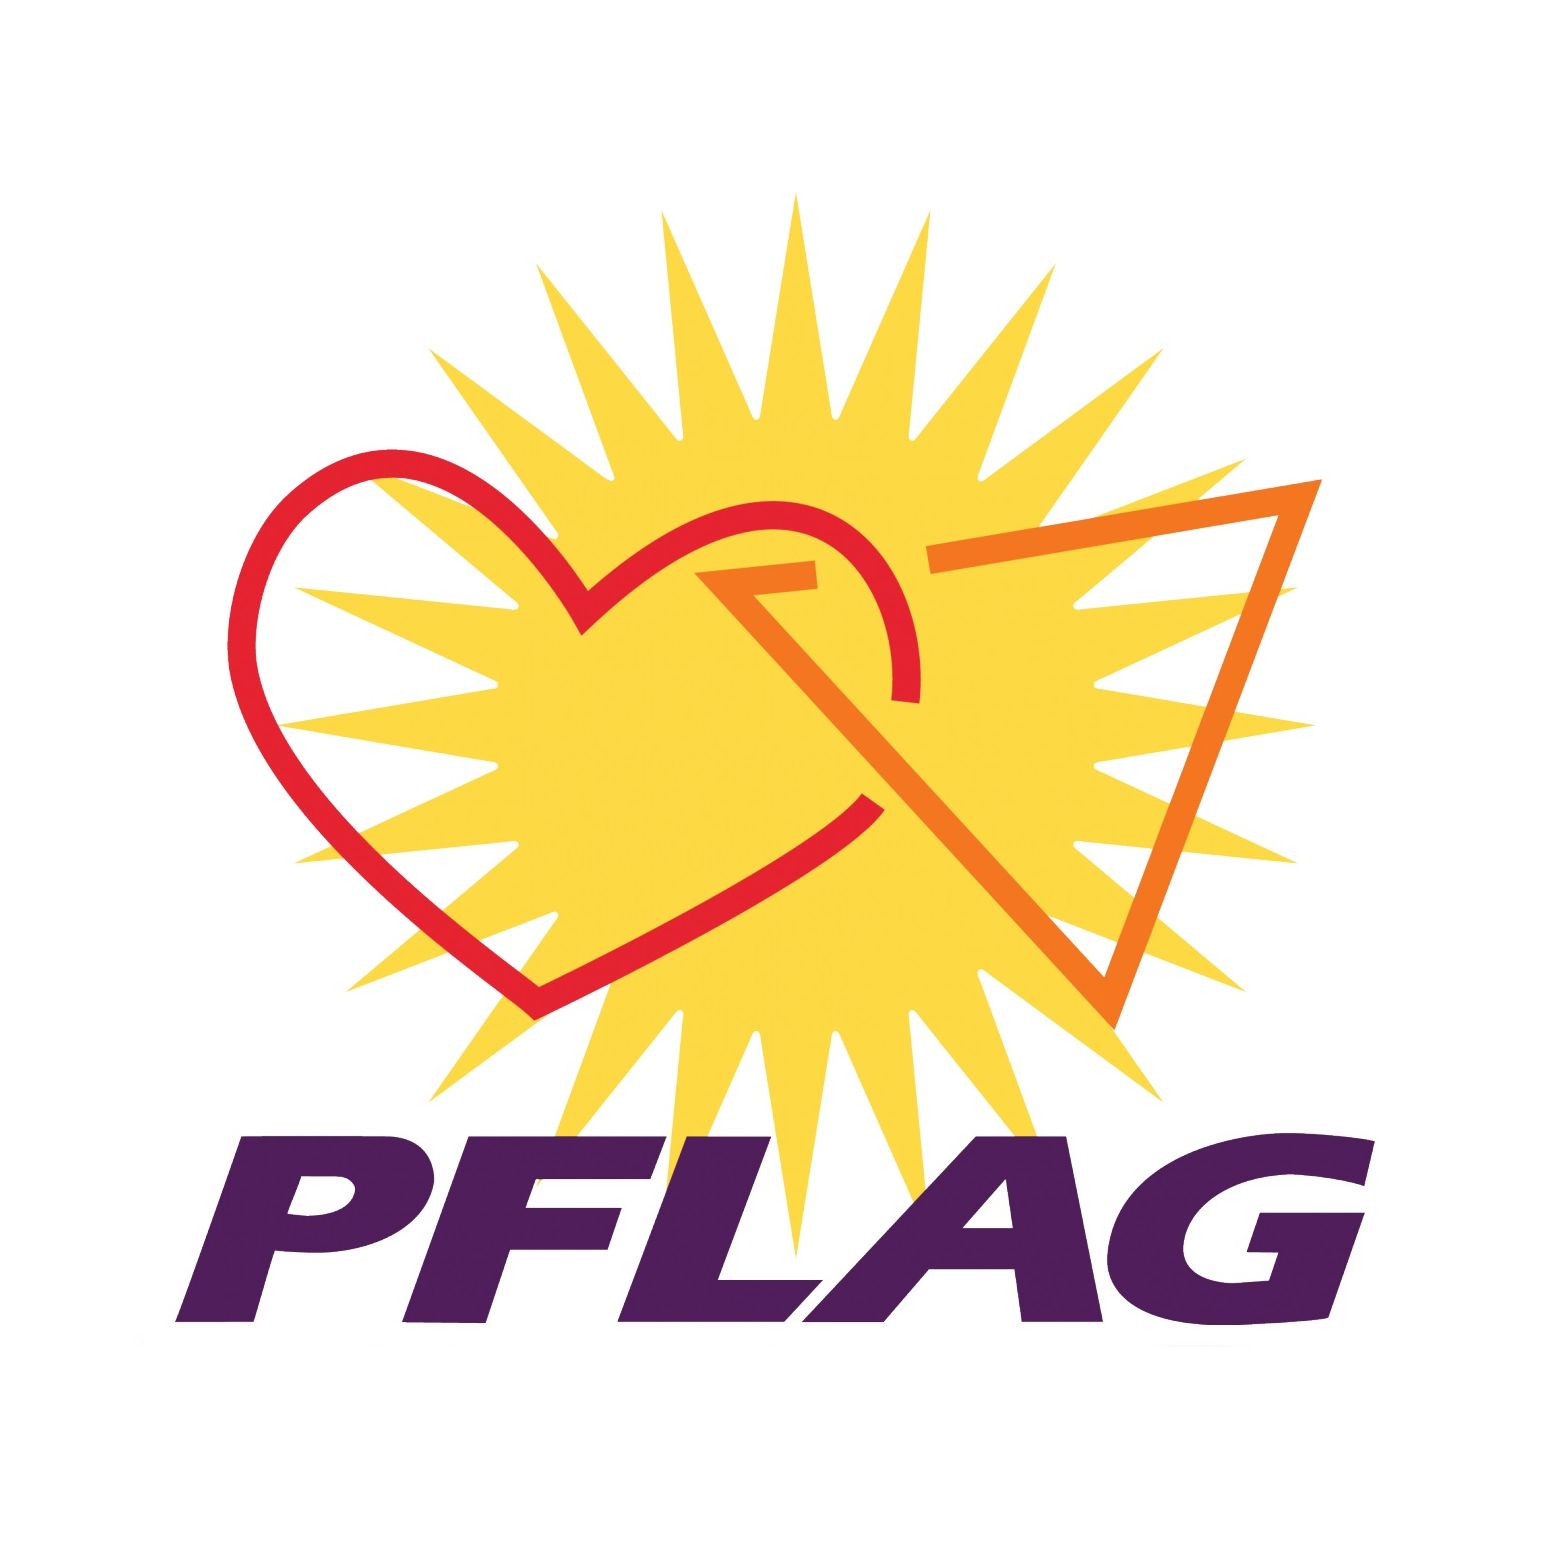 LGBTQ Organization in Denver Colorado - PFLAG Colorado Springs